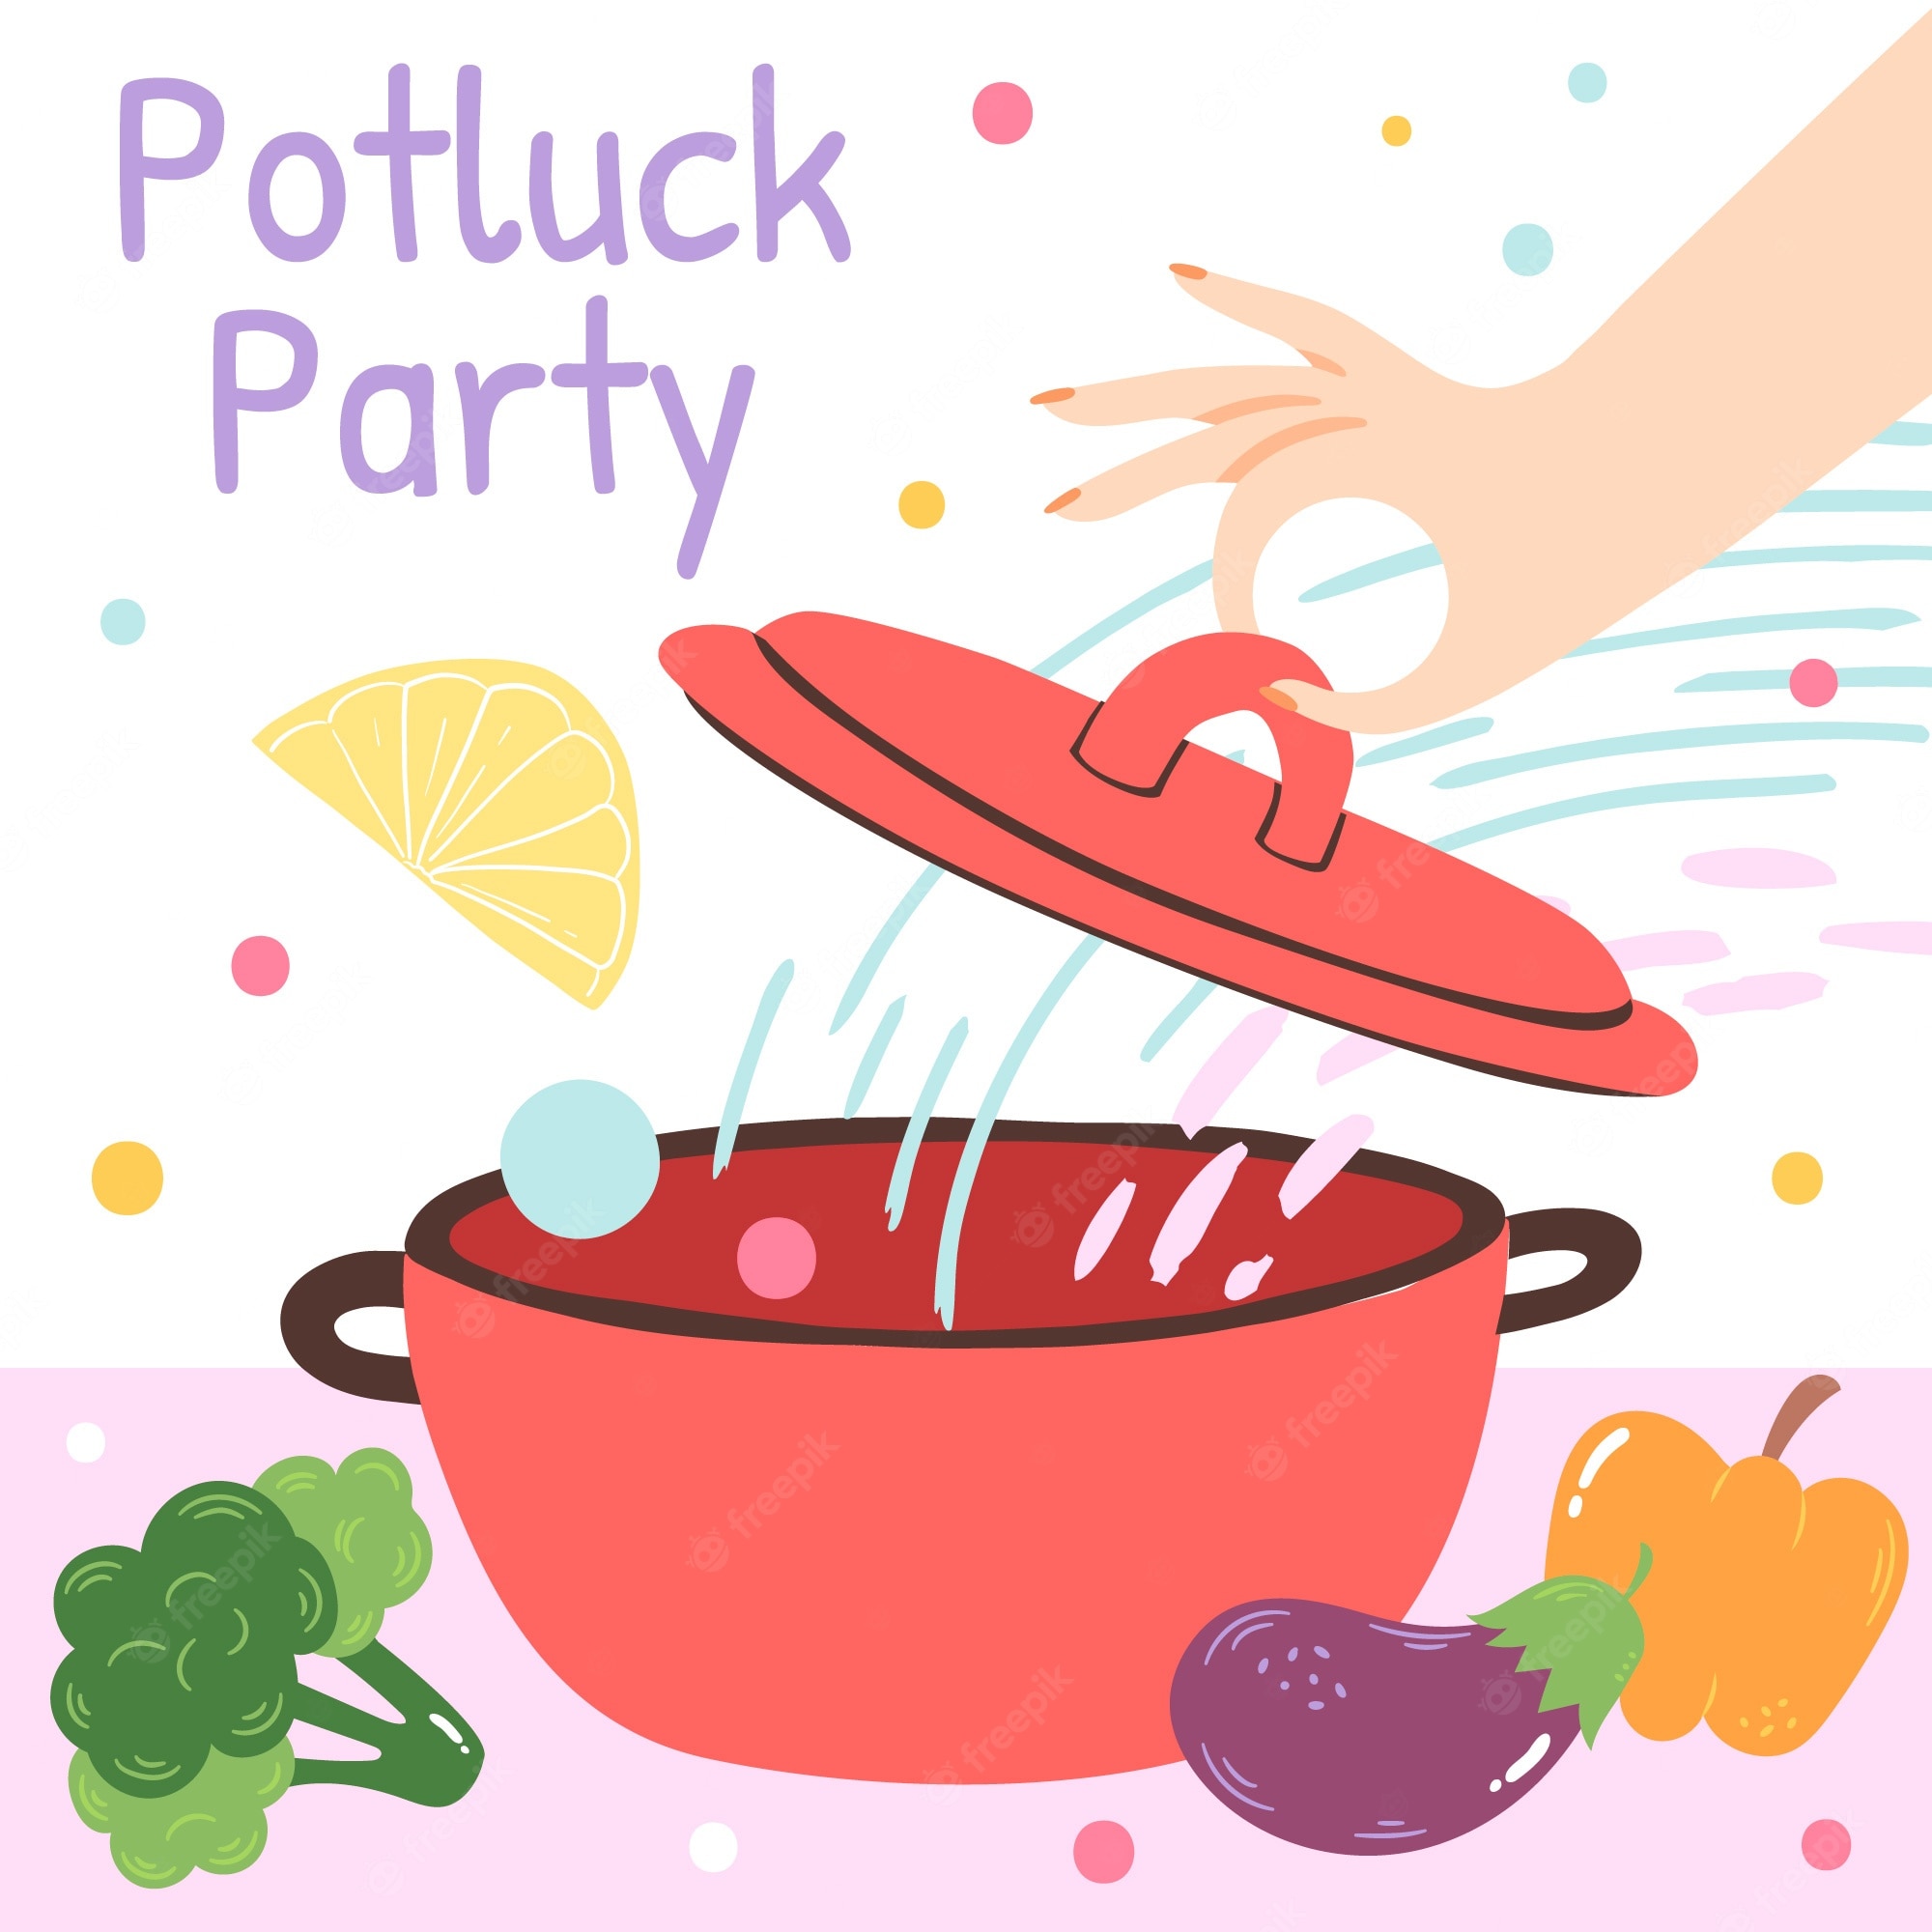 potluck clipart - Google Search | Clip art, Potluck dinner, Potluck ...